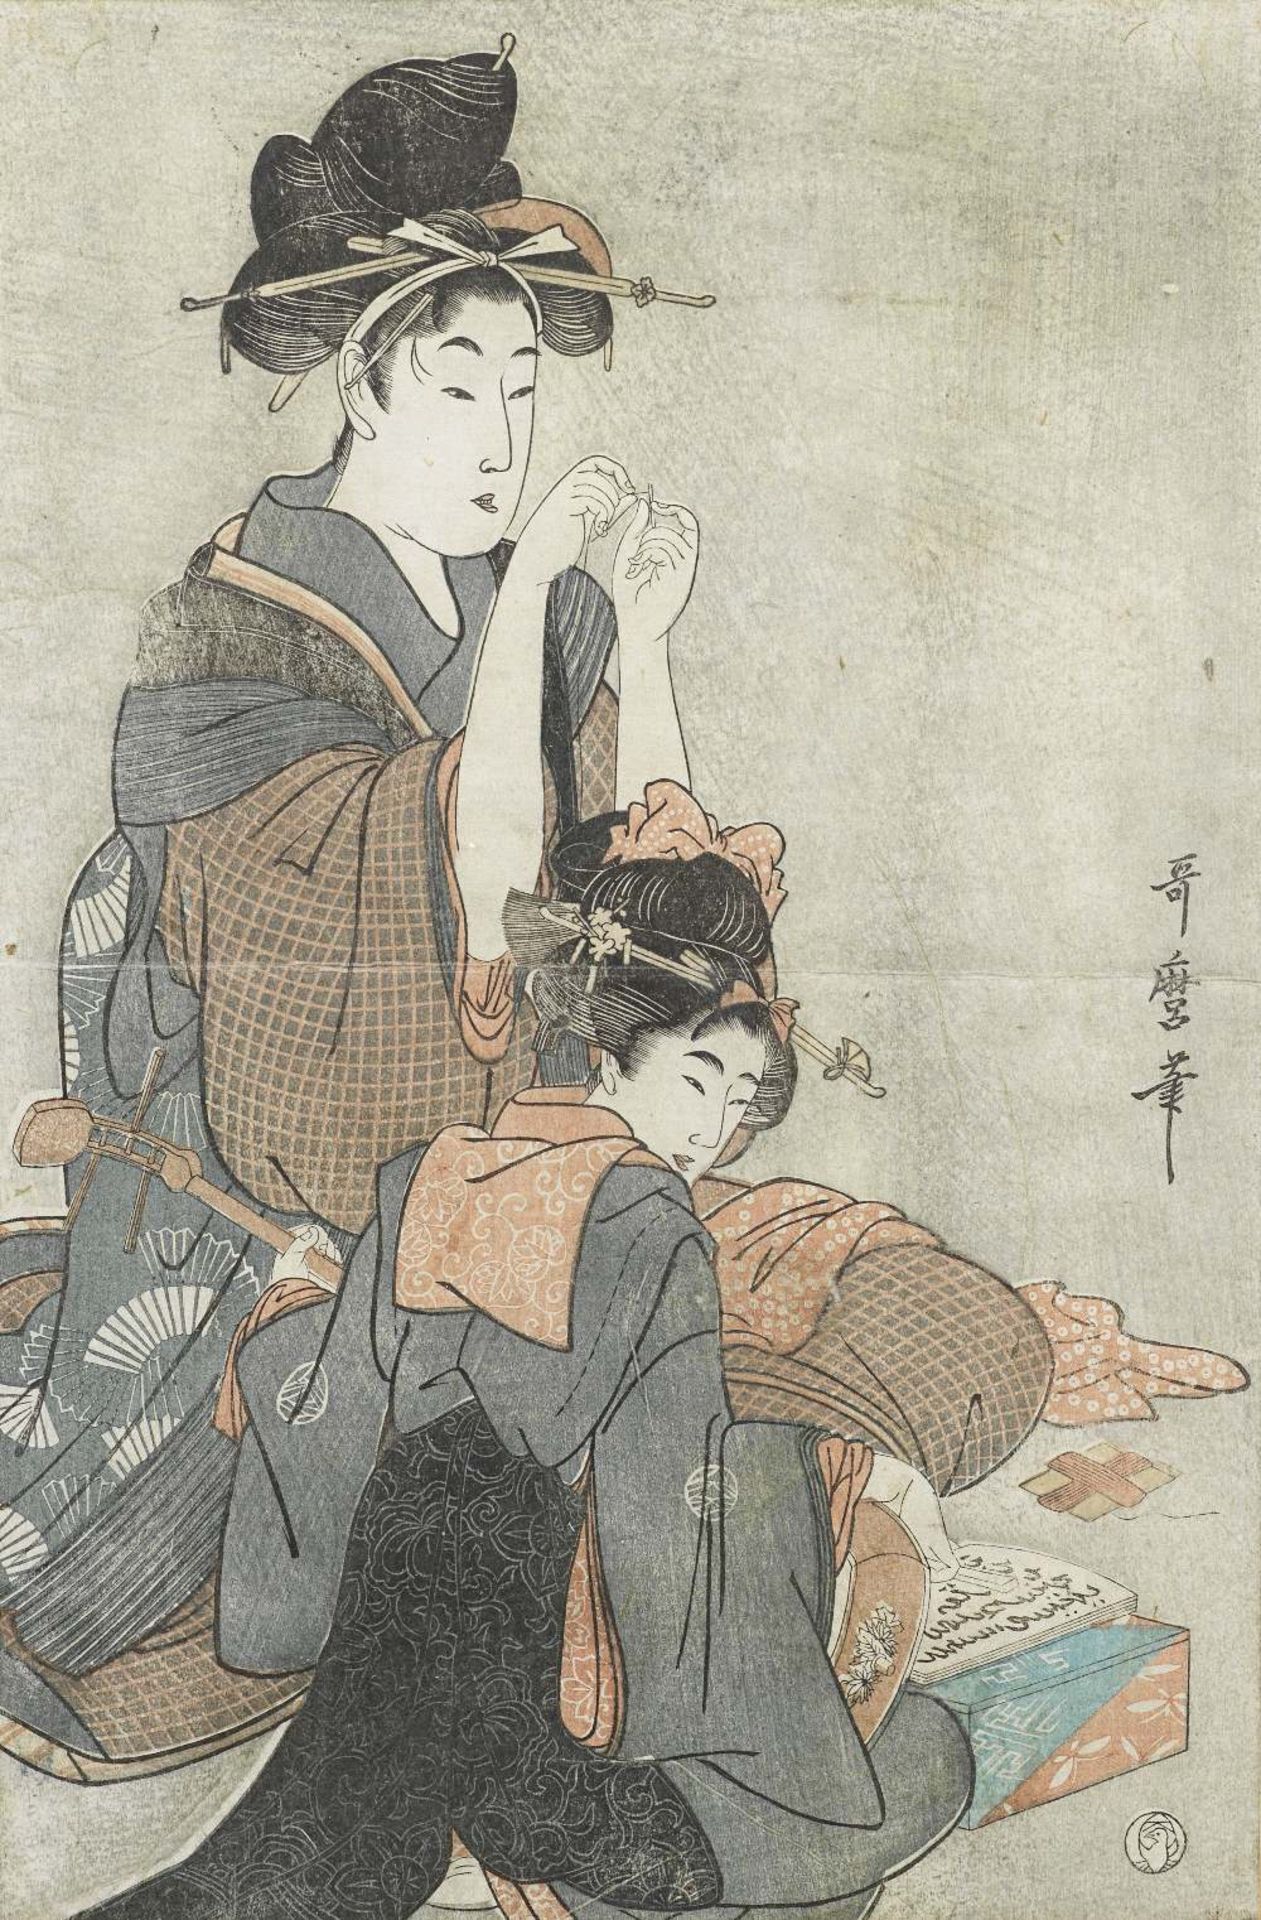 AFTER KITAGAWA UTAMARO (1753-1806) Edo period (1615-1868), late 18th/early 19th century